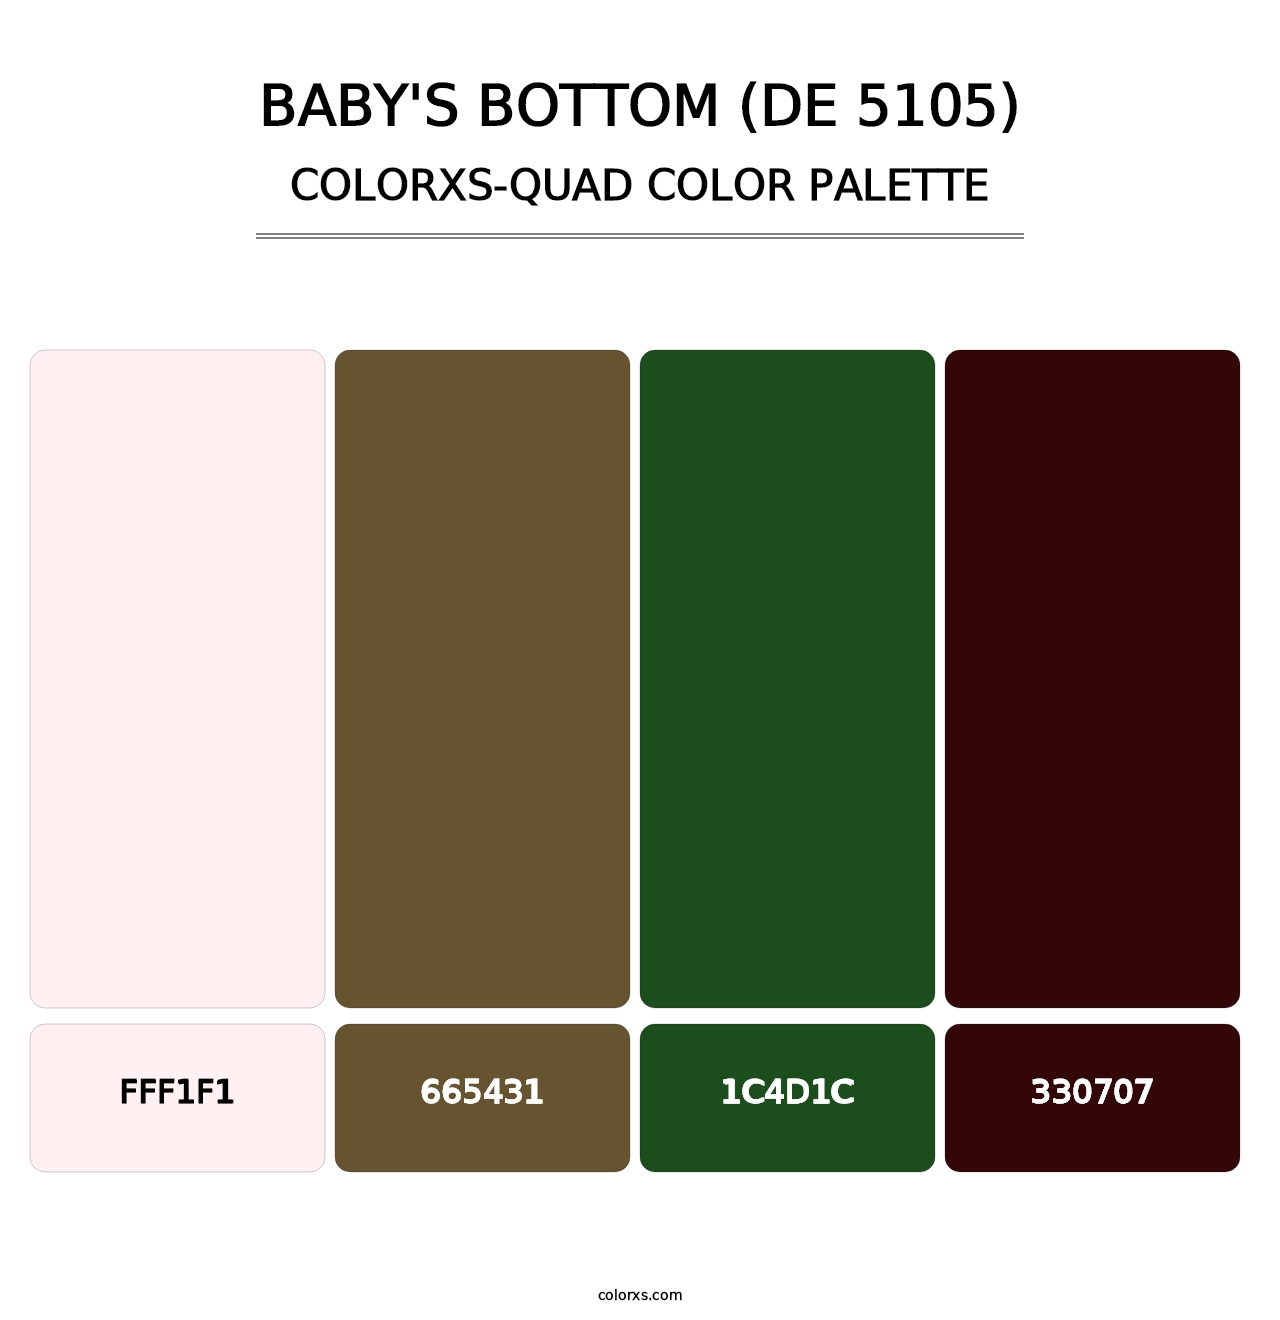 Baby's Bottom (DE 5105) - Colorxs Quad Palette